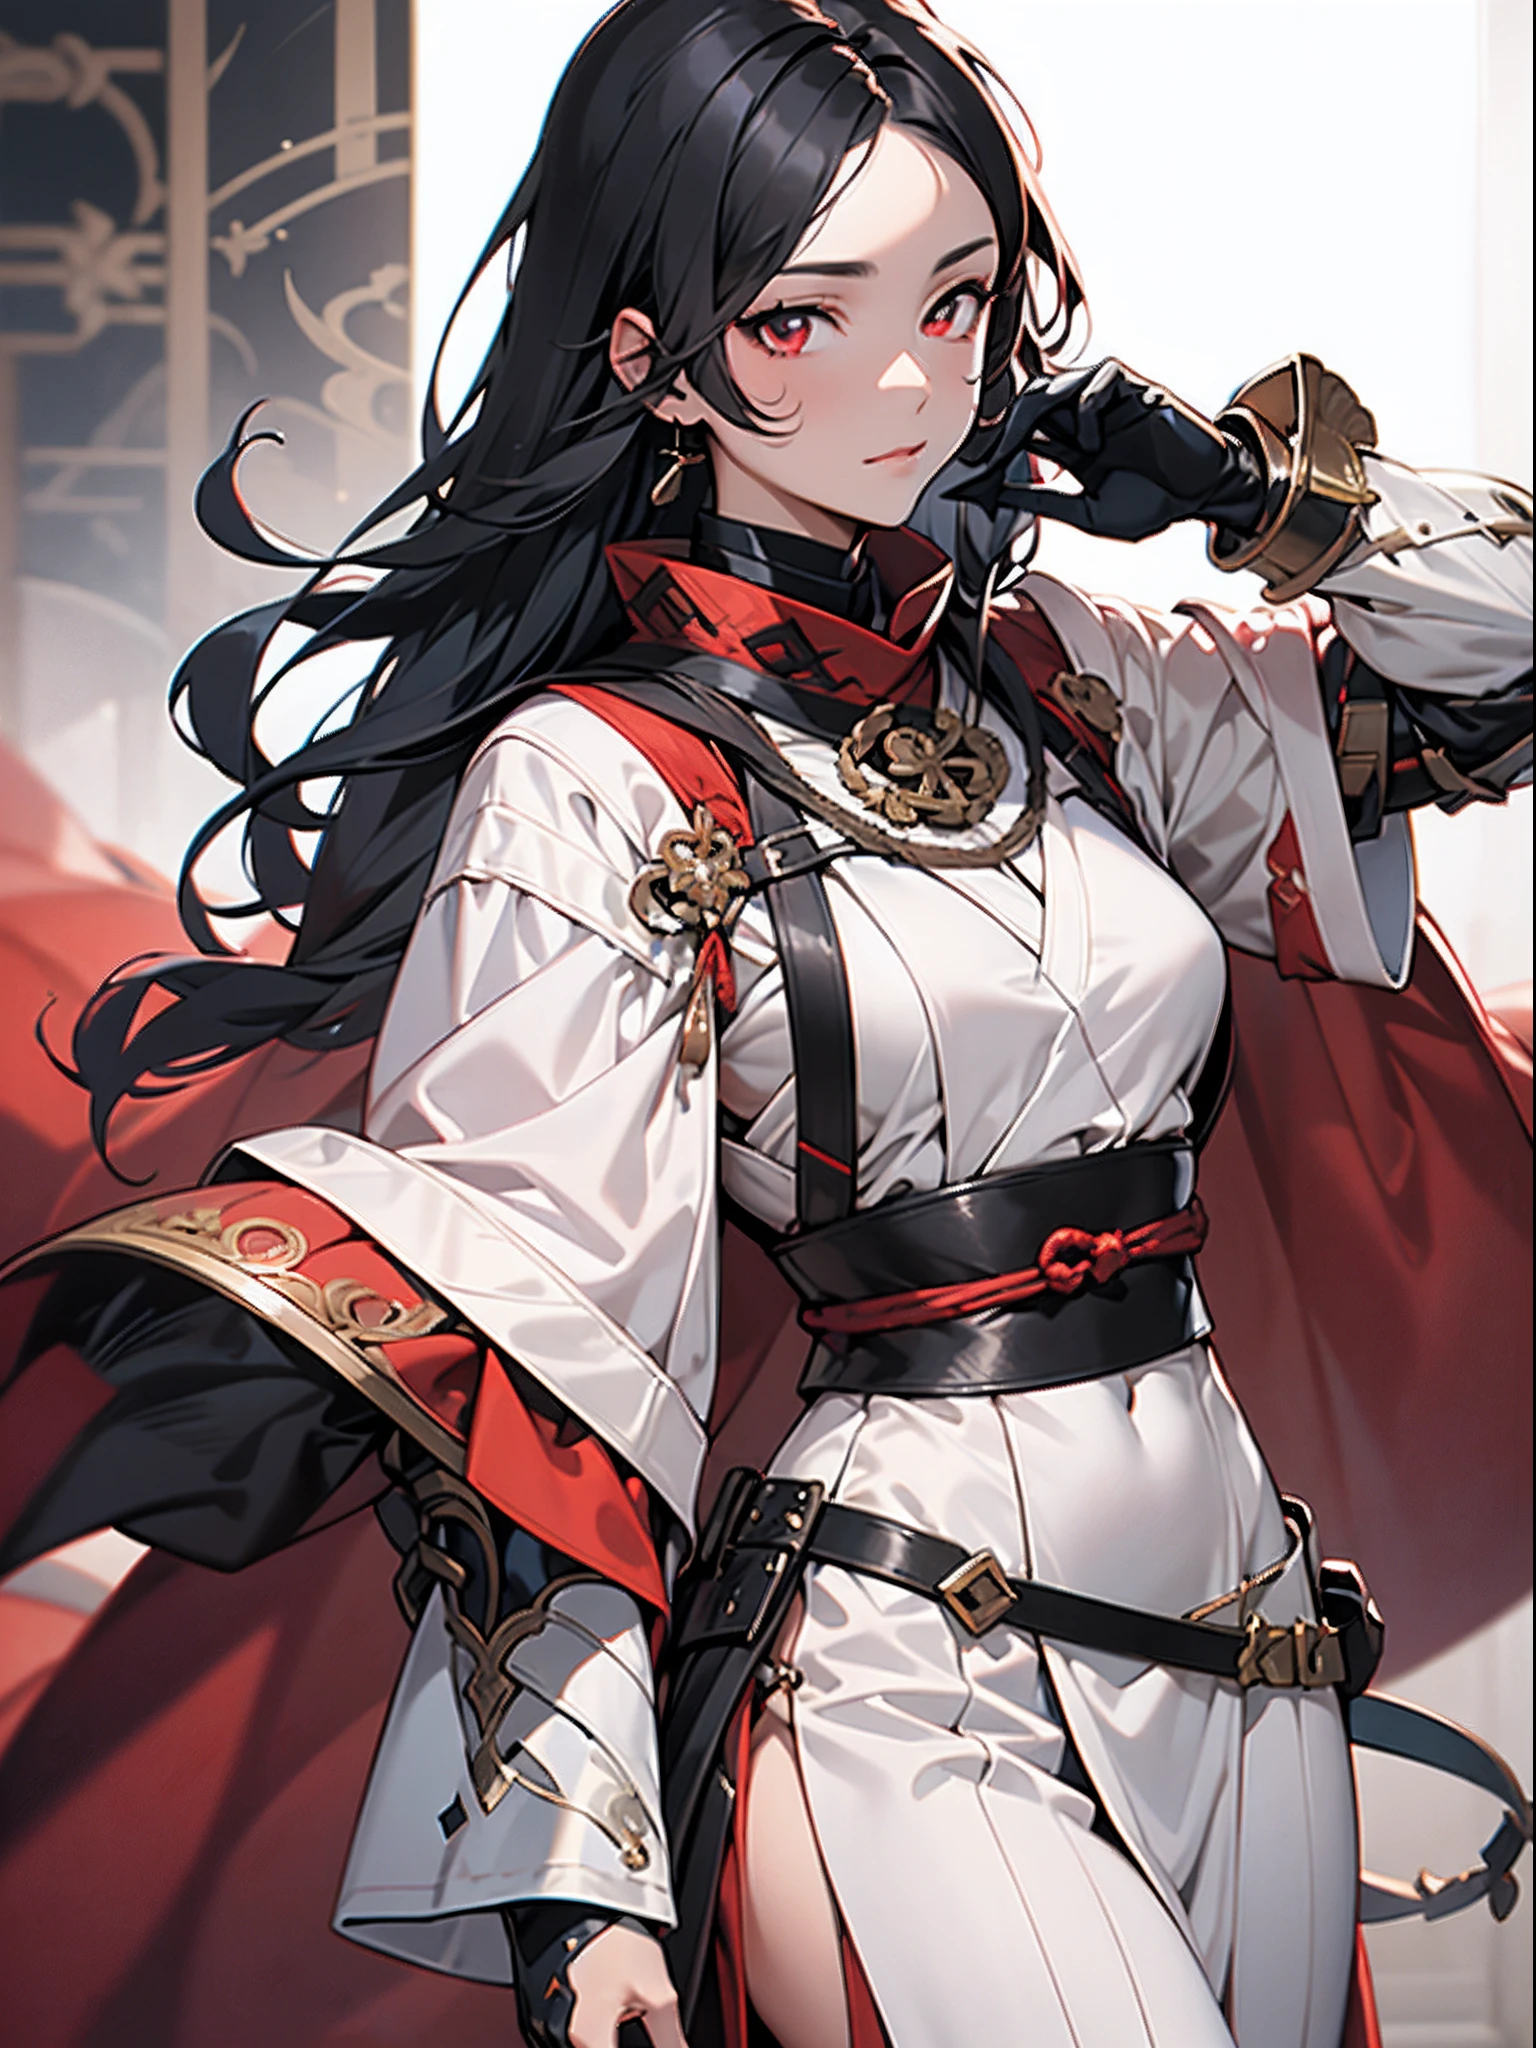 1 garota em,Onmyouji,suikan,armaduras,Capa vermelha com decoração branca,cabelo preto longo,olhos vermelhos,Manopla e luvas pretas,bela mão, mãos perfeitas